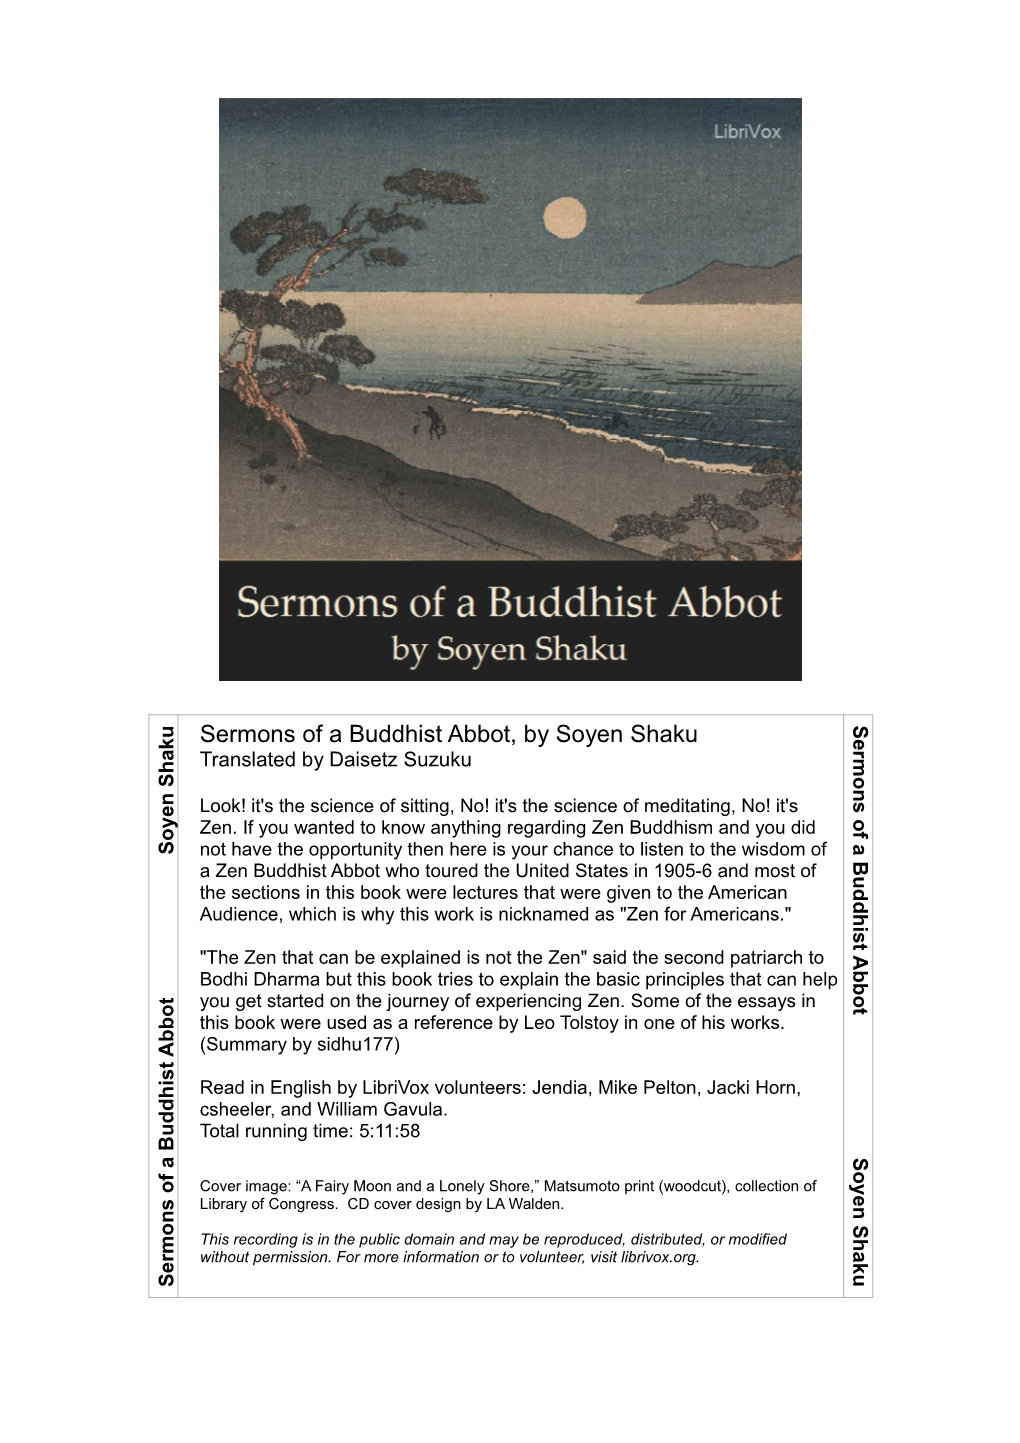 U Sermons of a Buddhist Abbot, by Soyen Shaku